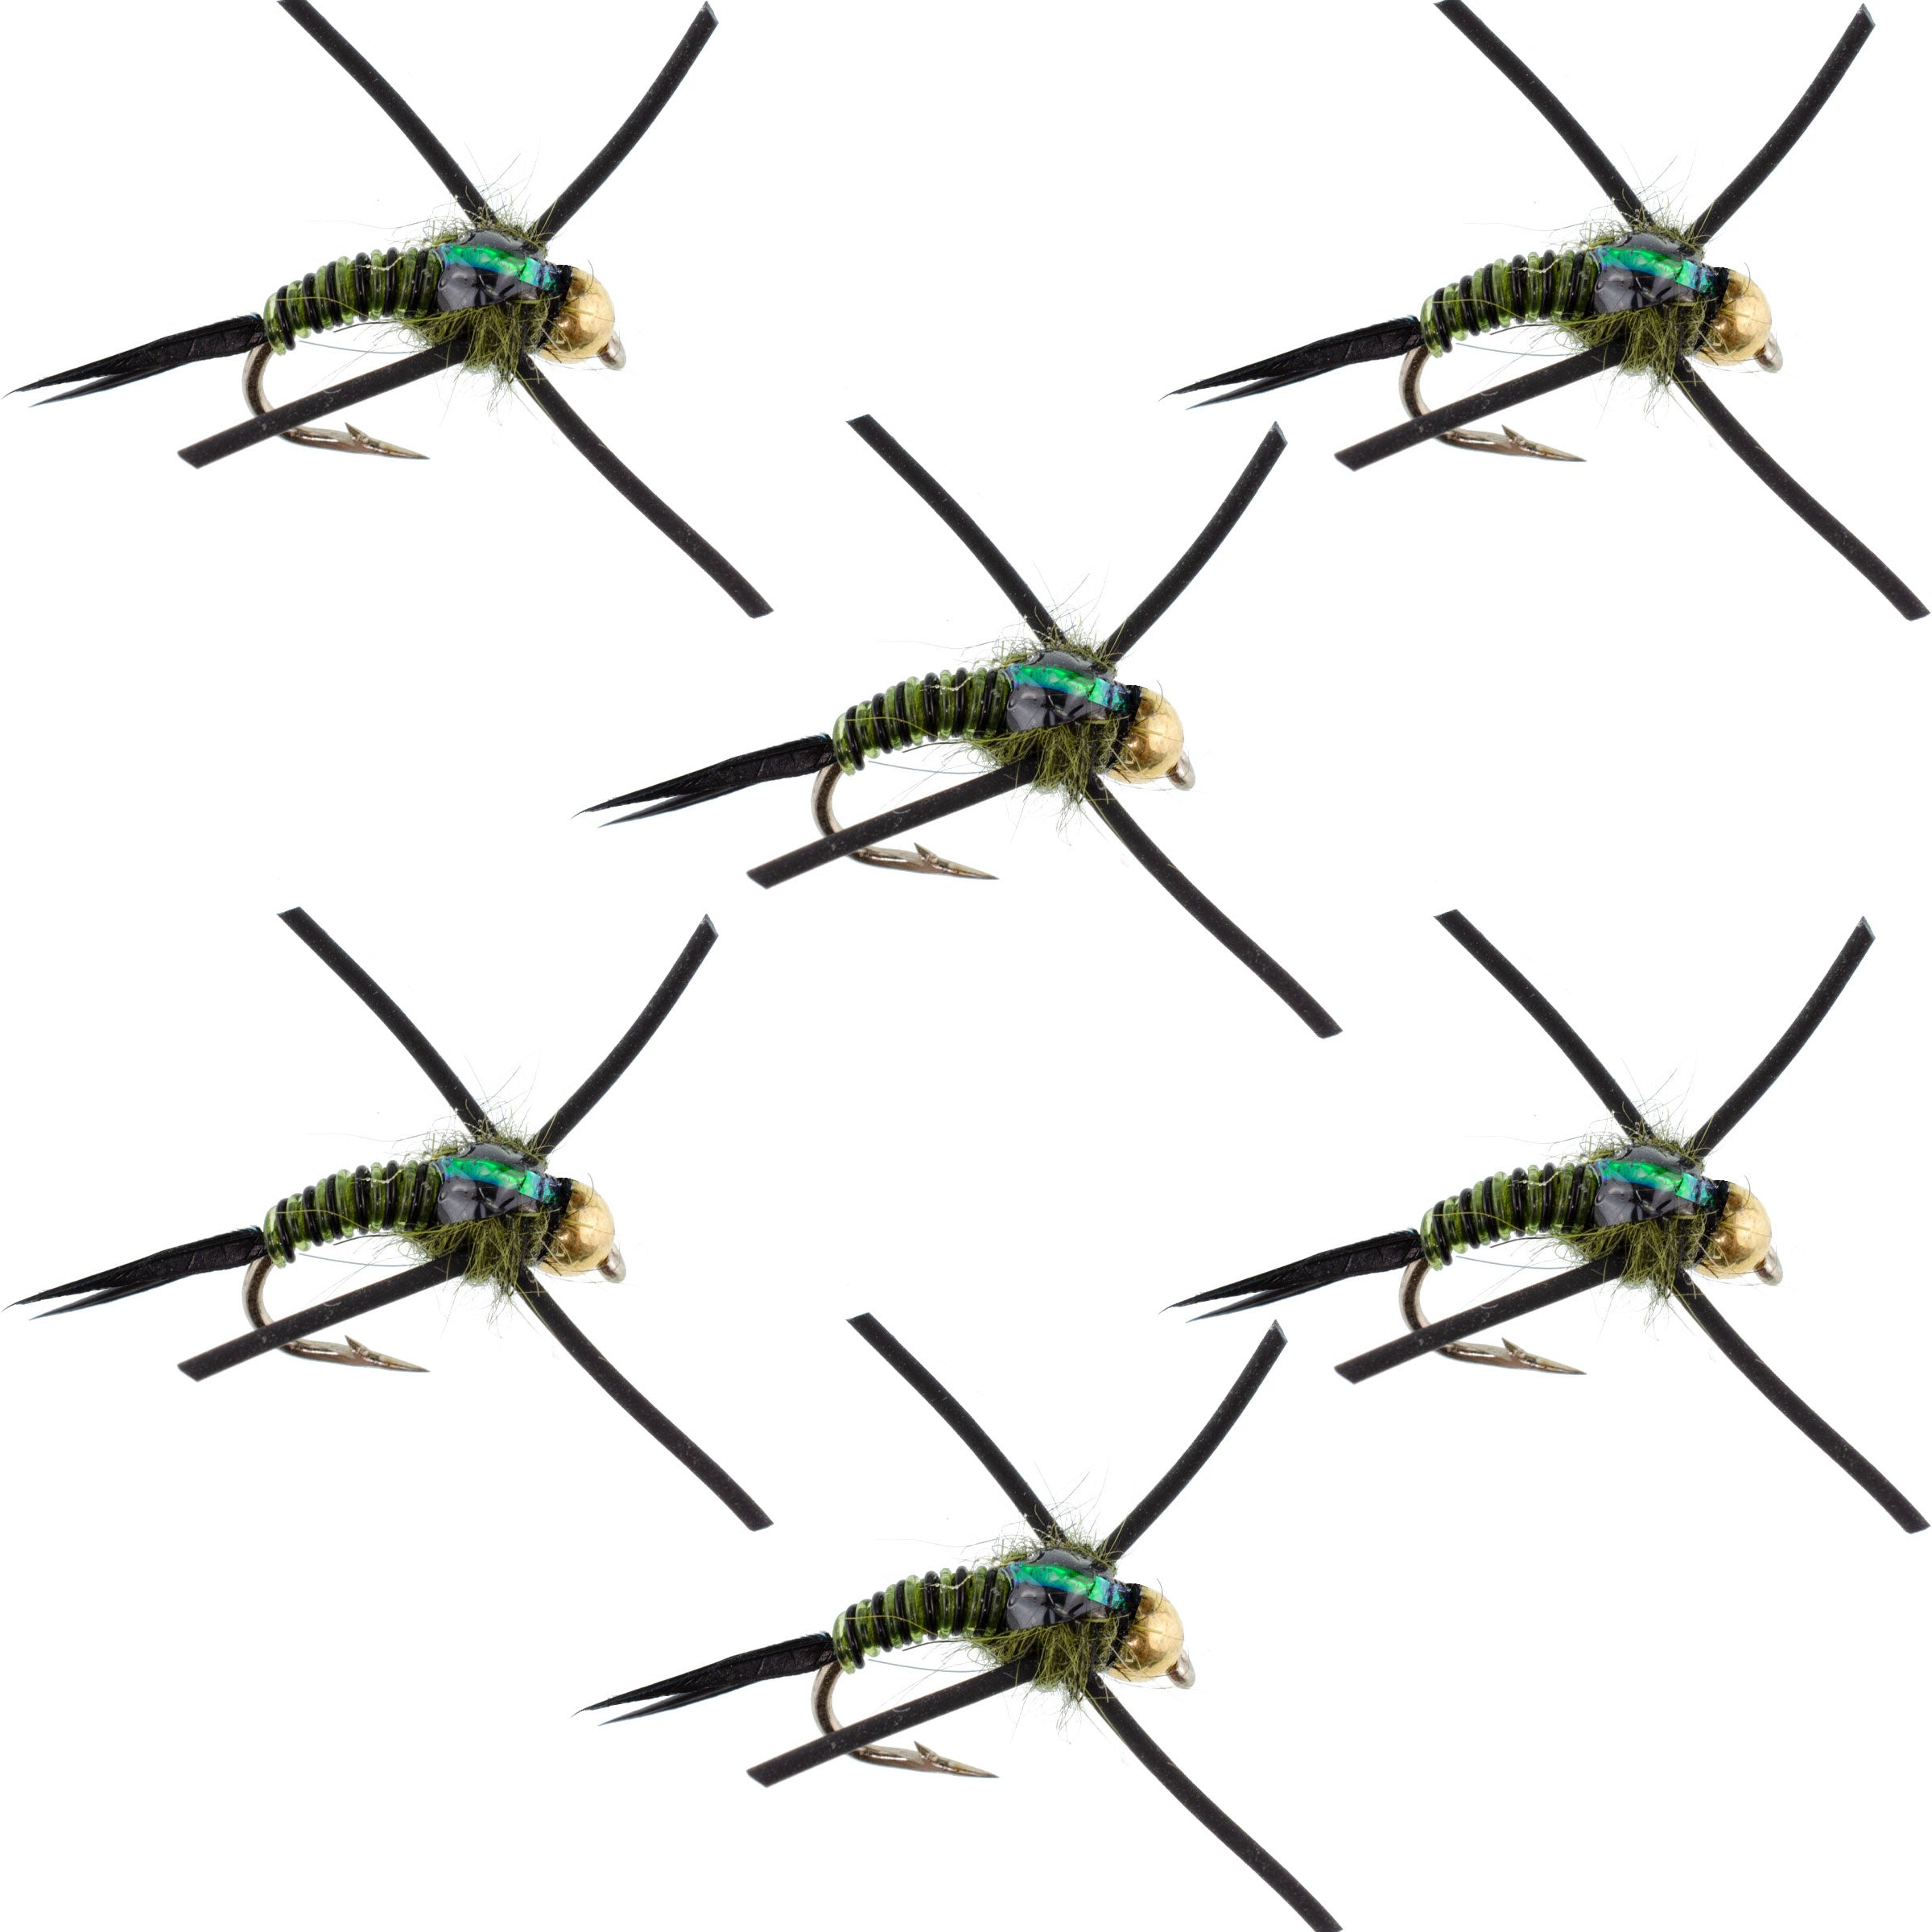 Tungsten Bead Head Rubber Legs Black Olive Zebra Copper John Nymph Fly Fishing Flies - Set of 6 Flies Hook Size 16